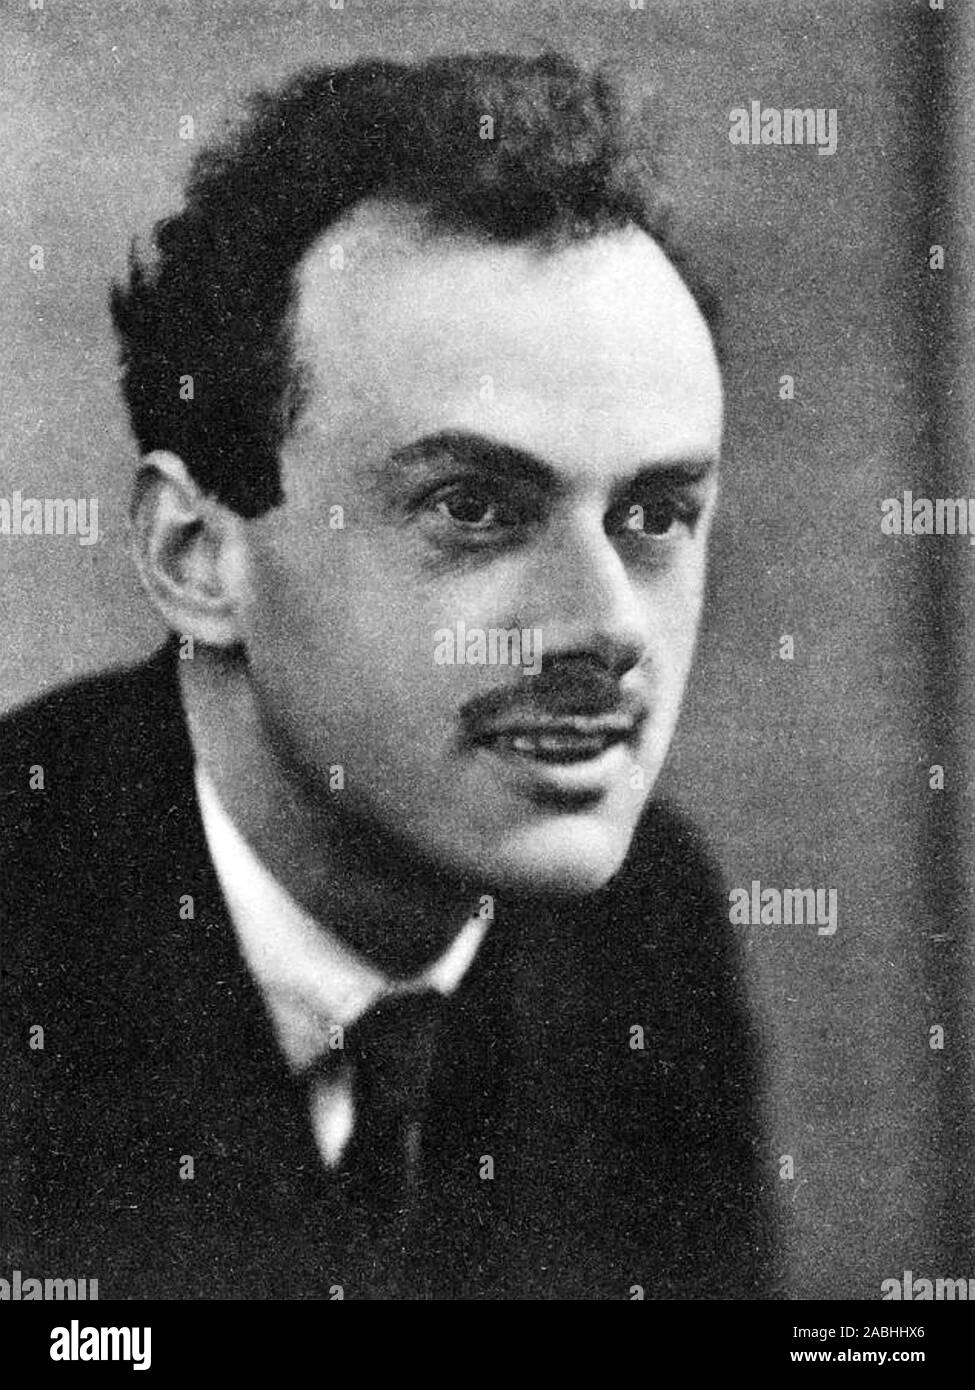 PAUL DIRAC (1902-1984), físico teórico Inglés 1933 Foto de stock